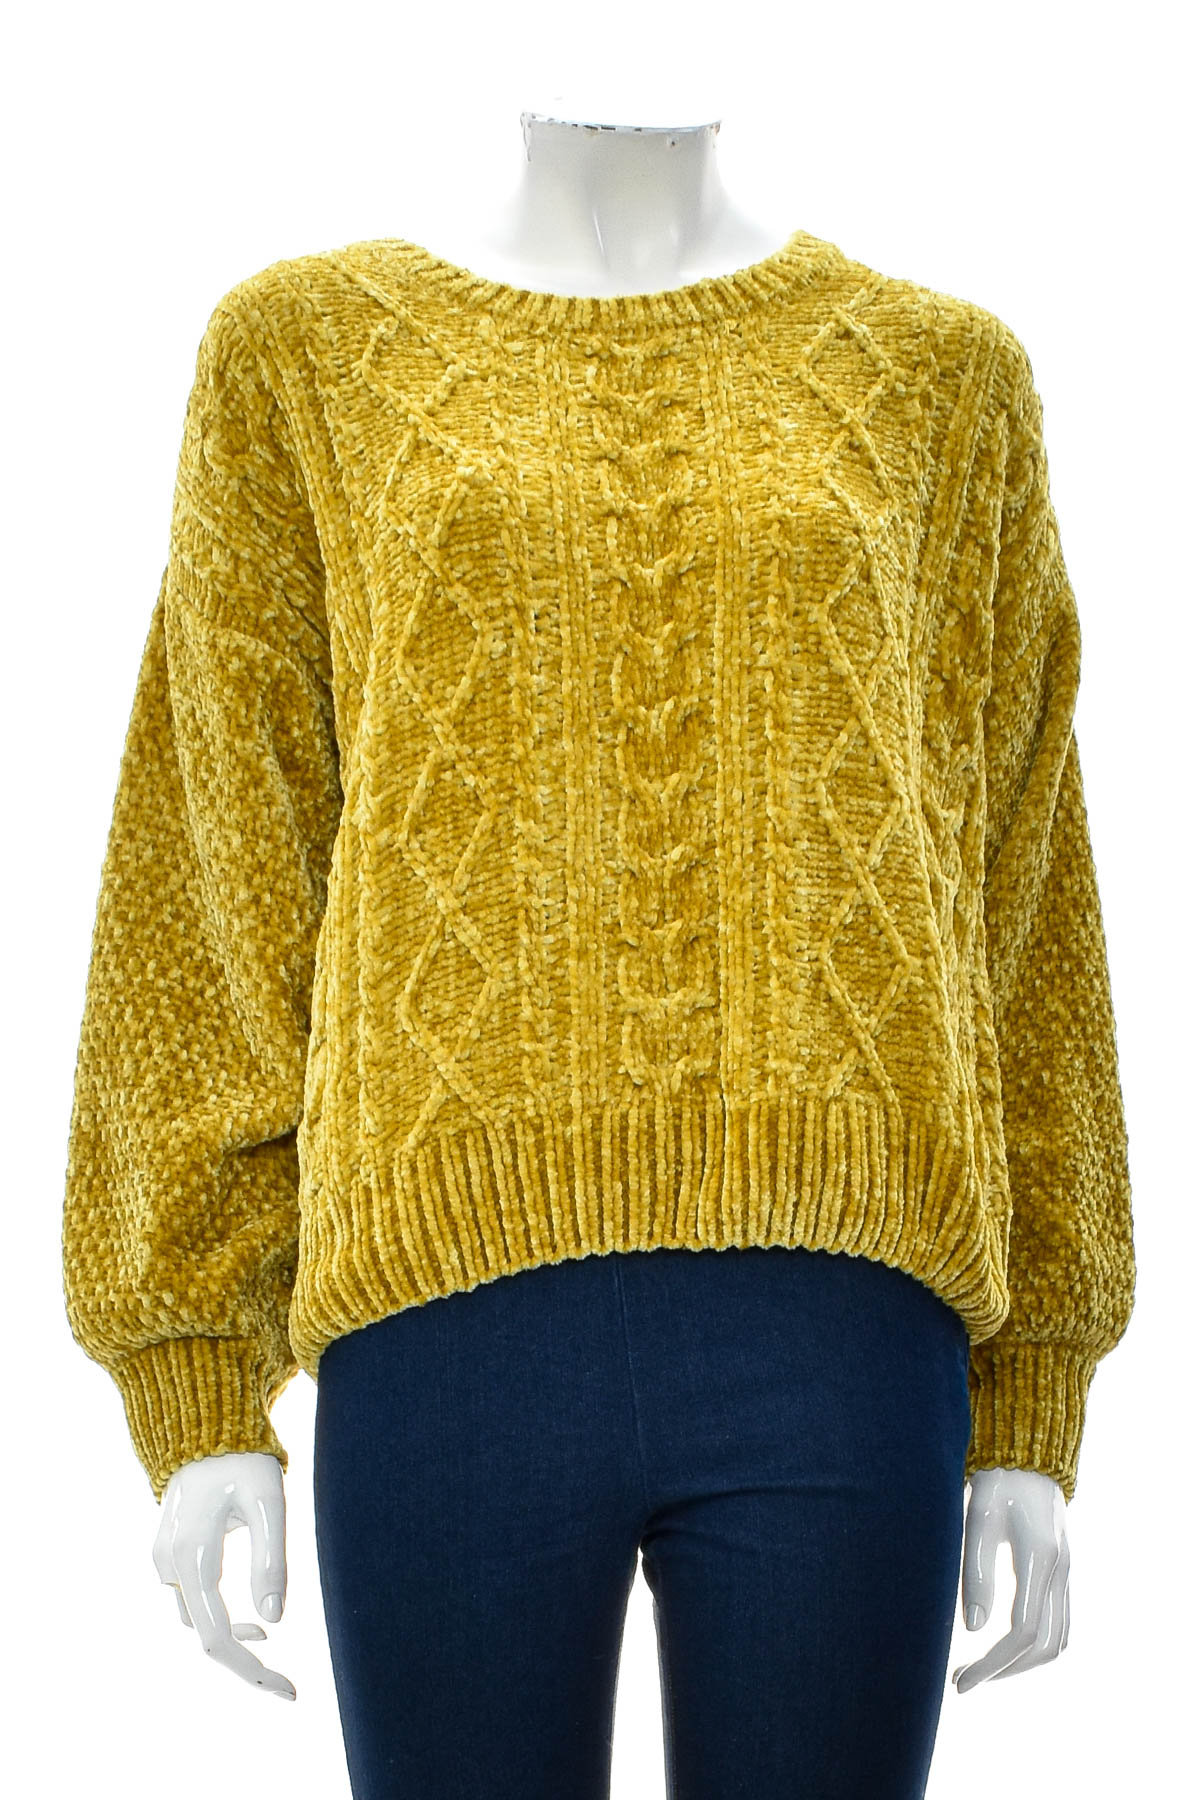 Women's sweater - CHELSEA & THEODORE - 0